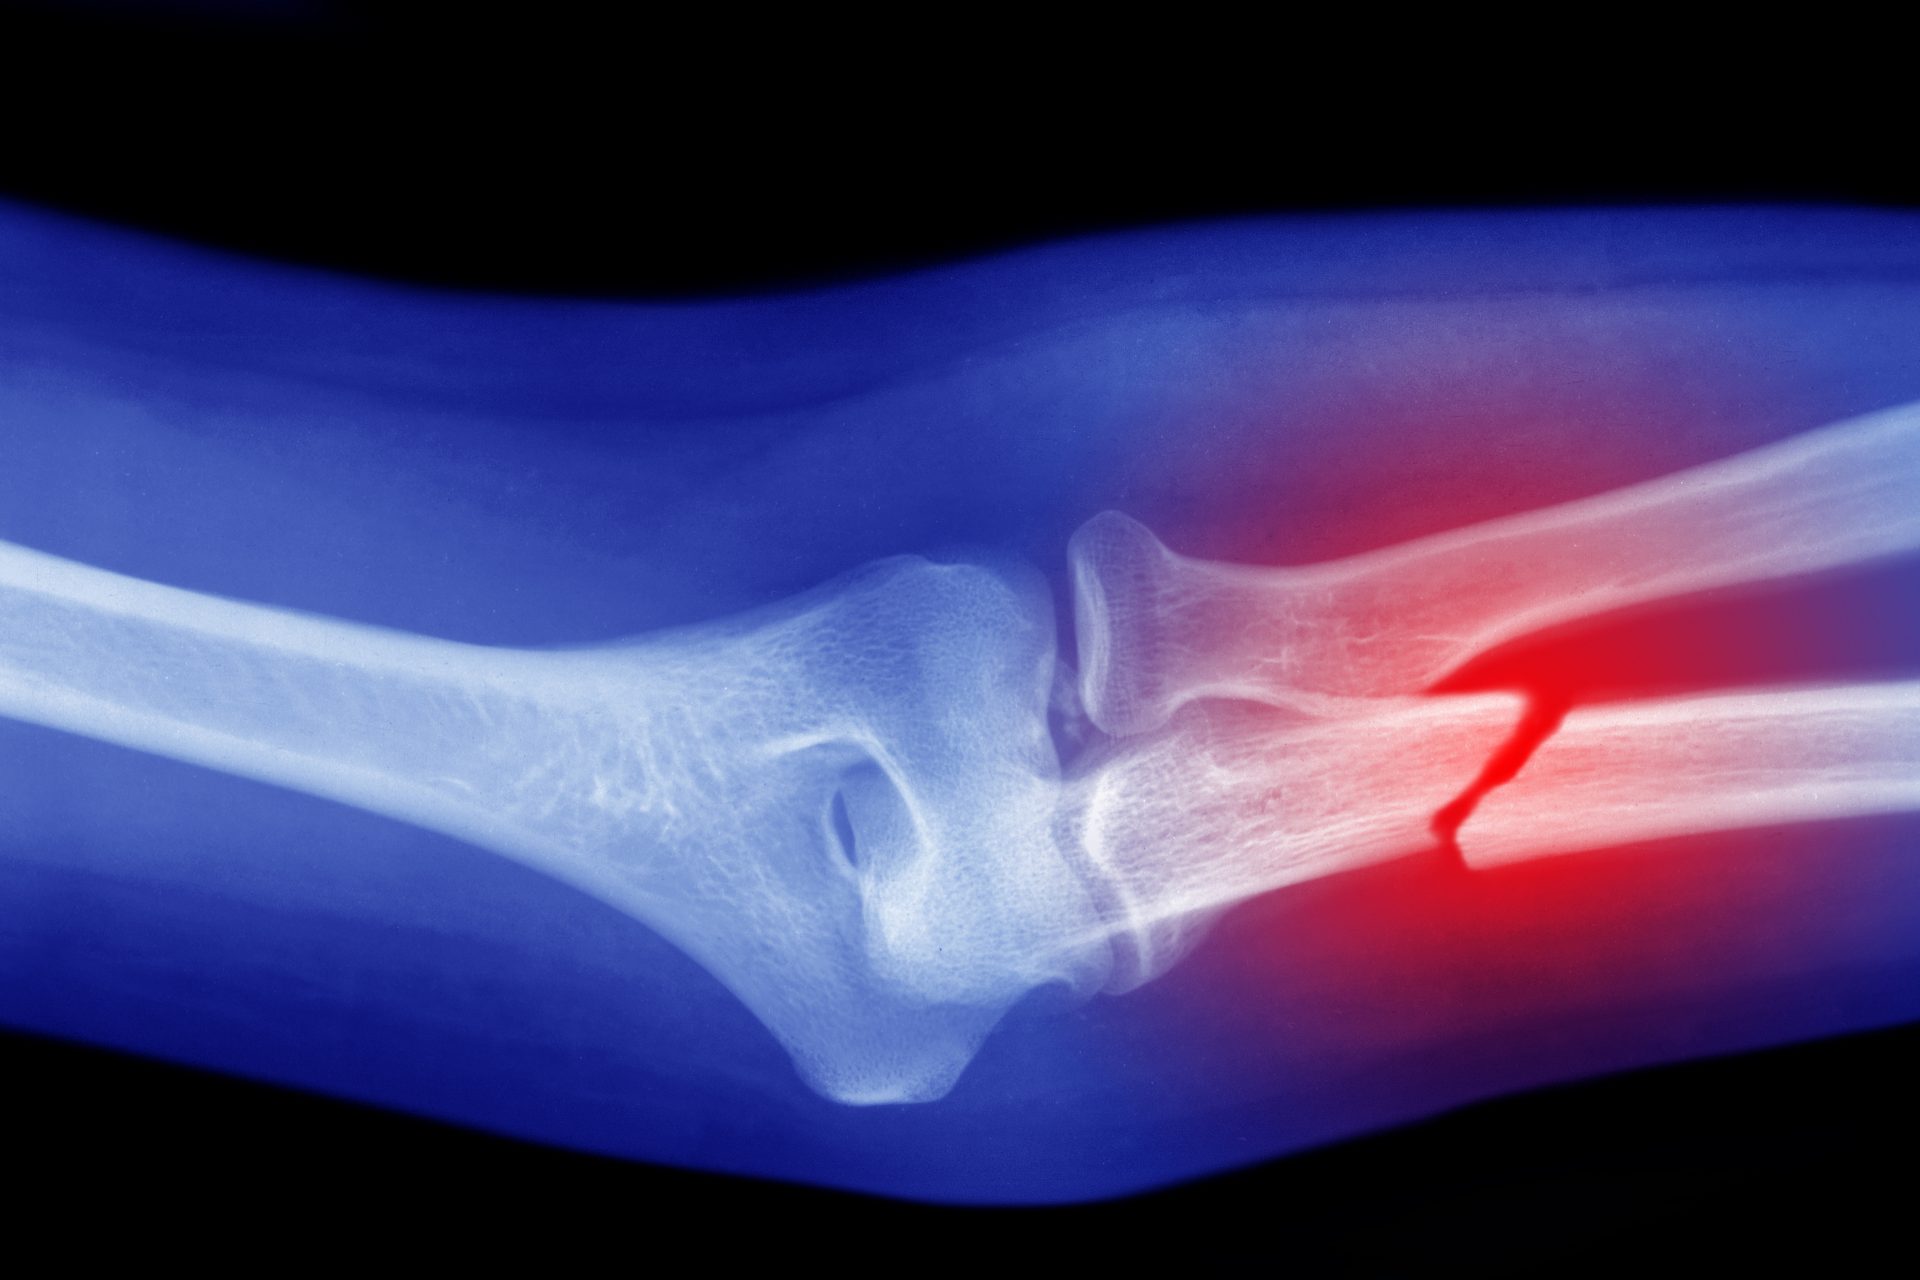 Menos lesiones musculares pero mayor riesgo de reducción de densidad ósea